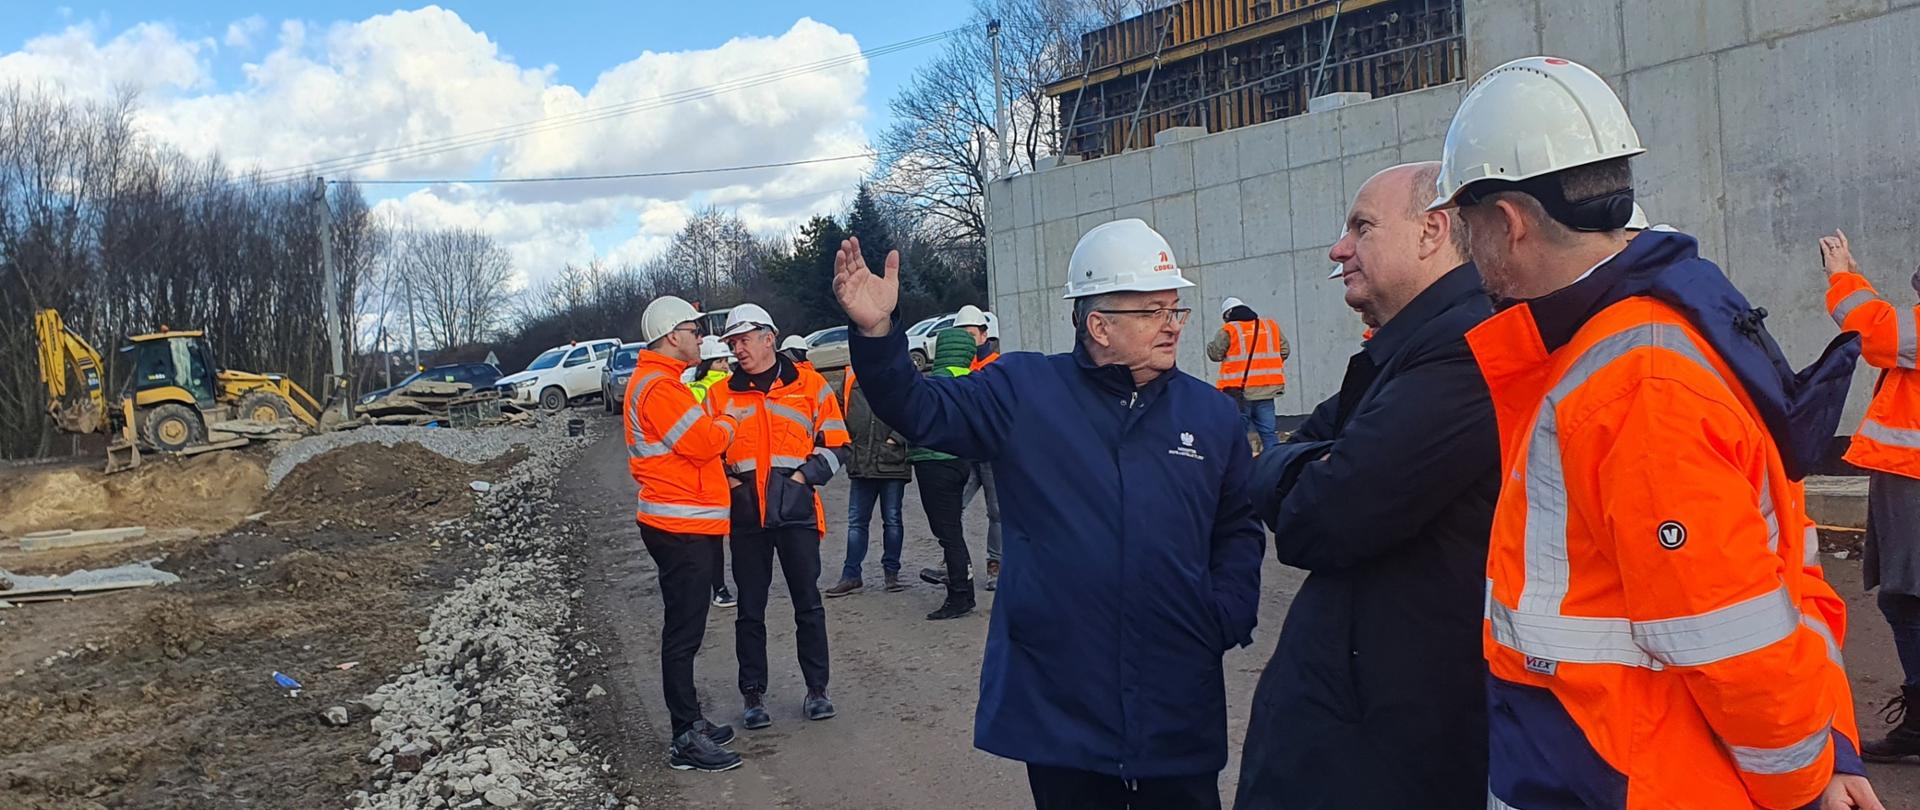 Postępują prace na budowie drogi S7 oraz S52: Północnej Obwodnicy Krakowa